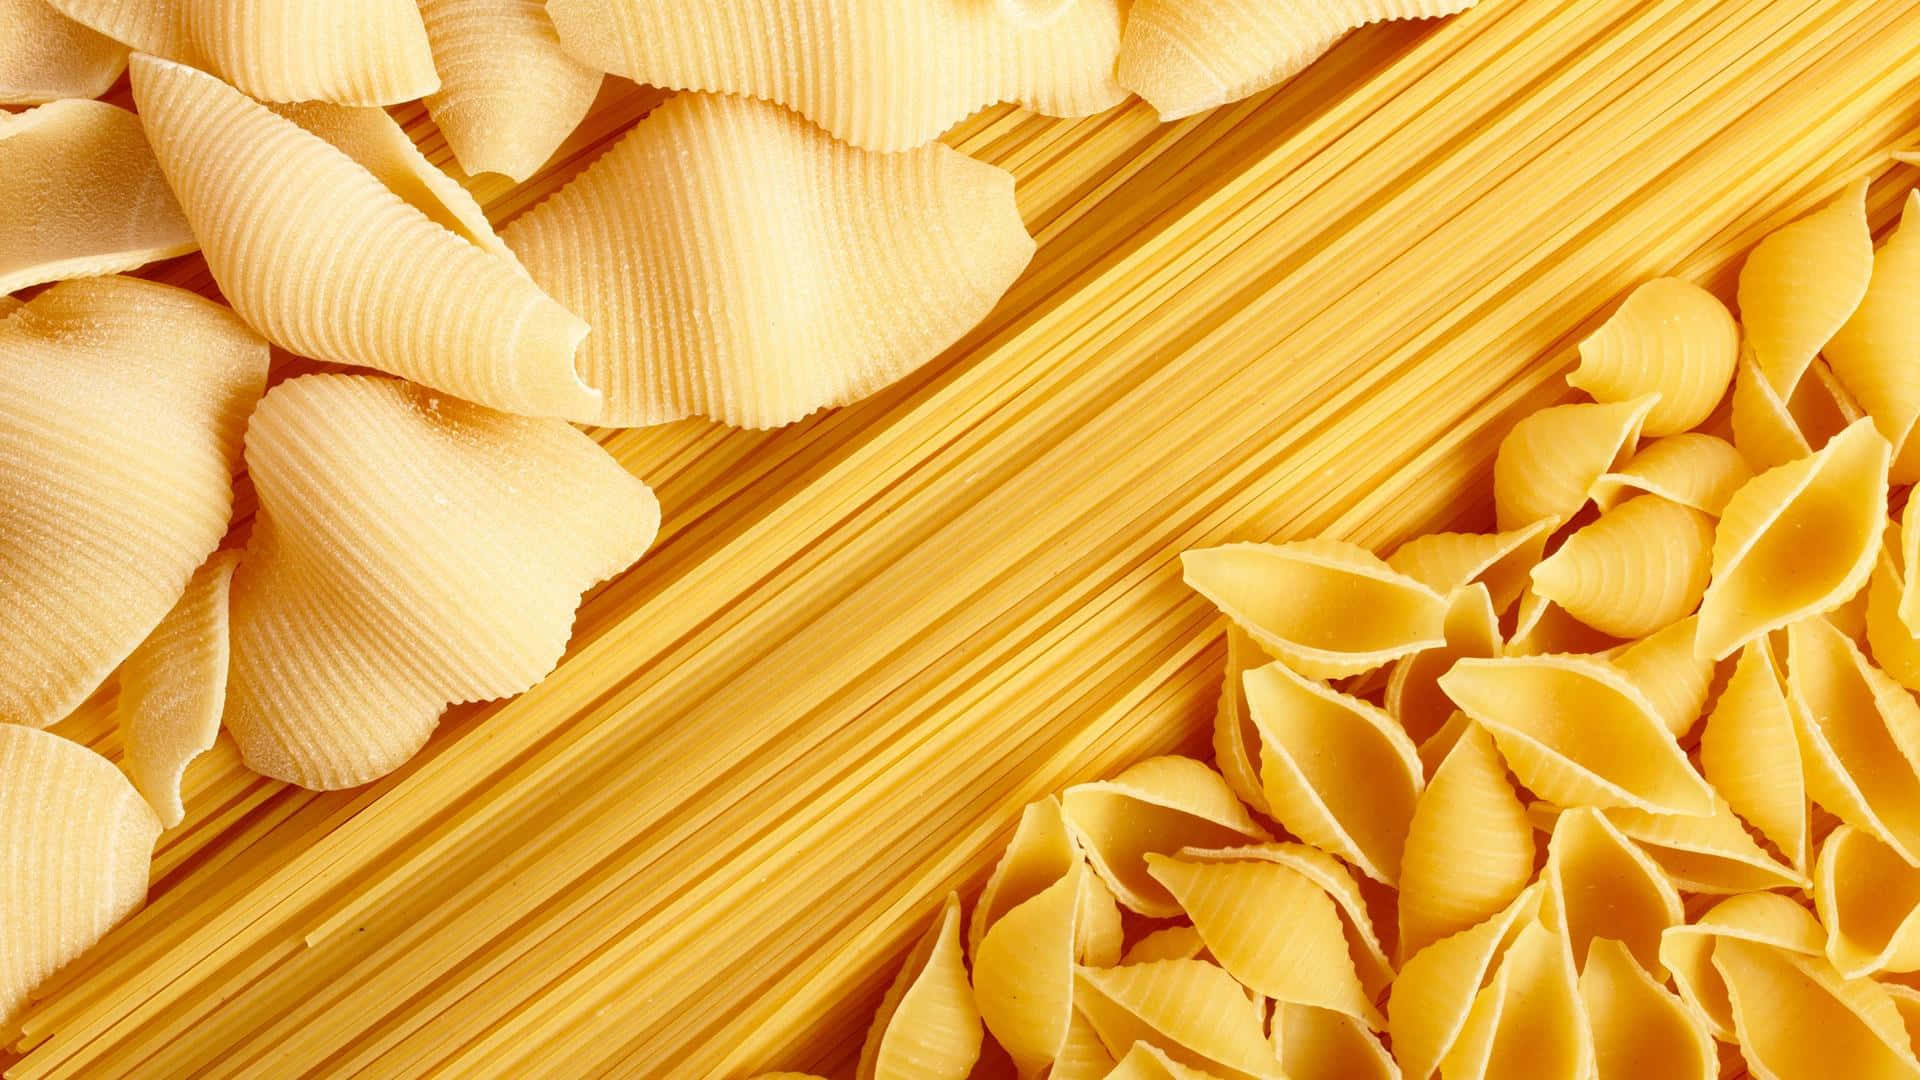 Enjoy a delicious bowl of pasta!